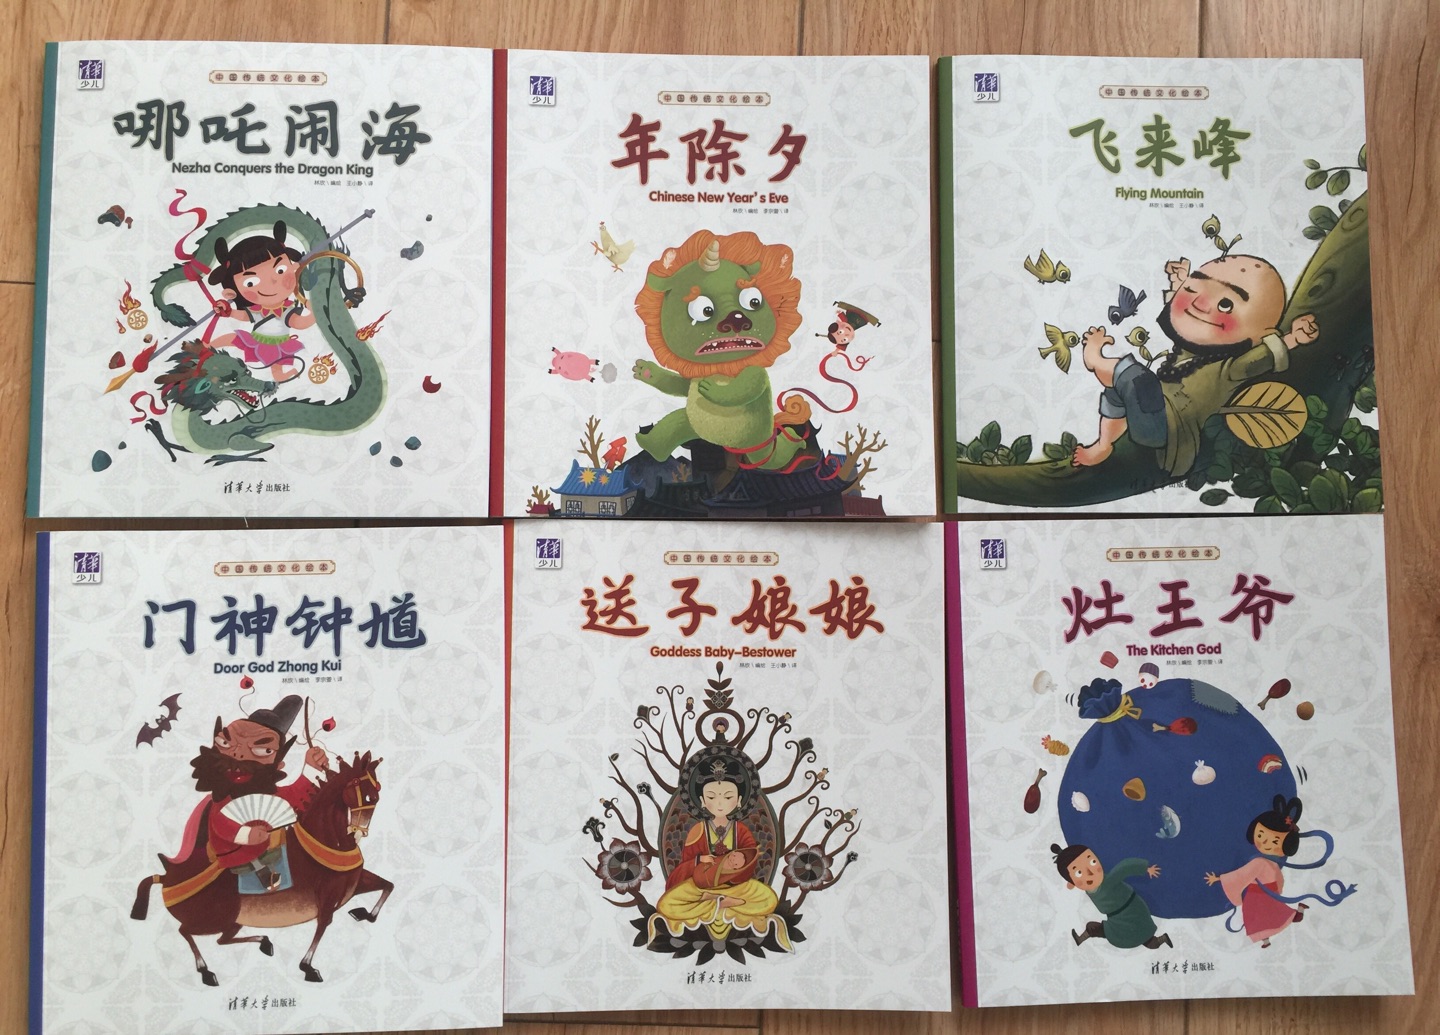 确实很快，书当新年礼物很好，让孩子了解下中国的传统文化，很佩服这个有爱的爸爸画给孩子的书，孩子很喜欢看，还子很喜欢动手做手工，一点不难，而且做出来超漂亮，超赞！！